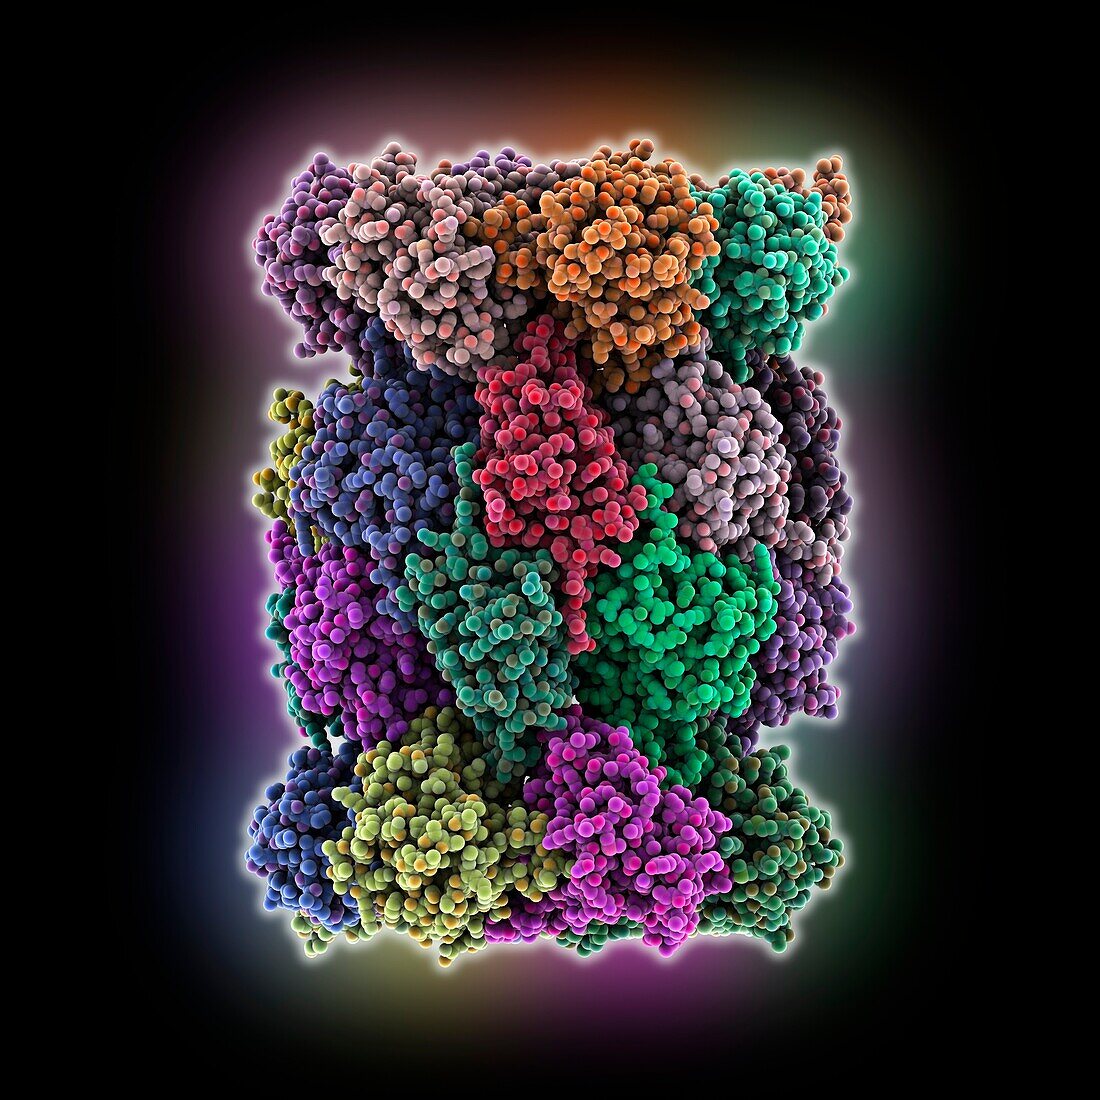 Human 20S proteasome, molecular model